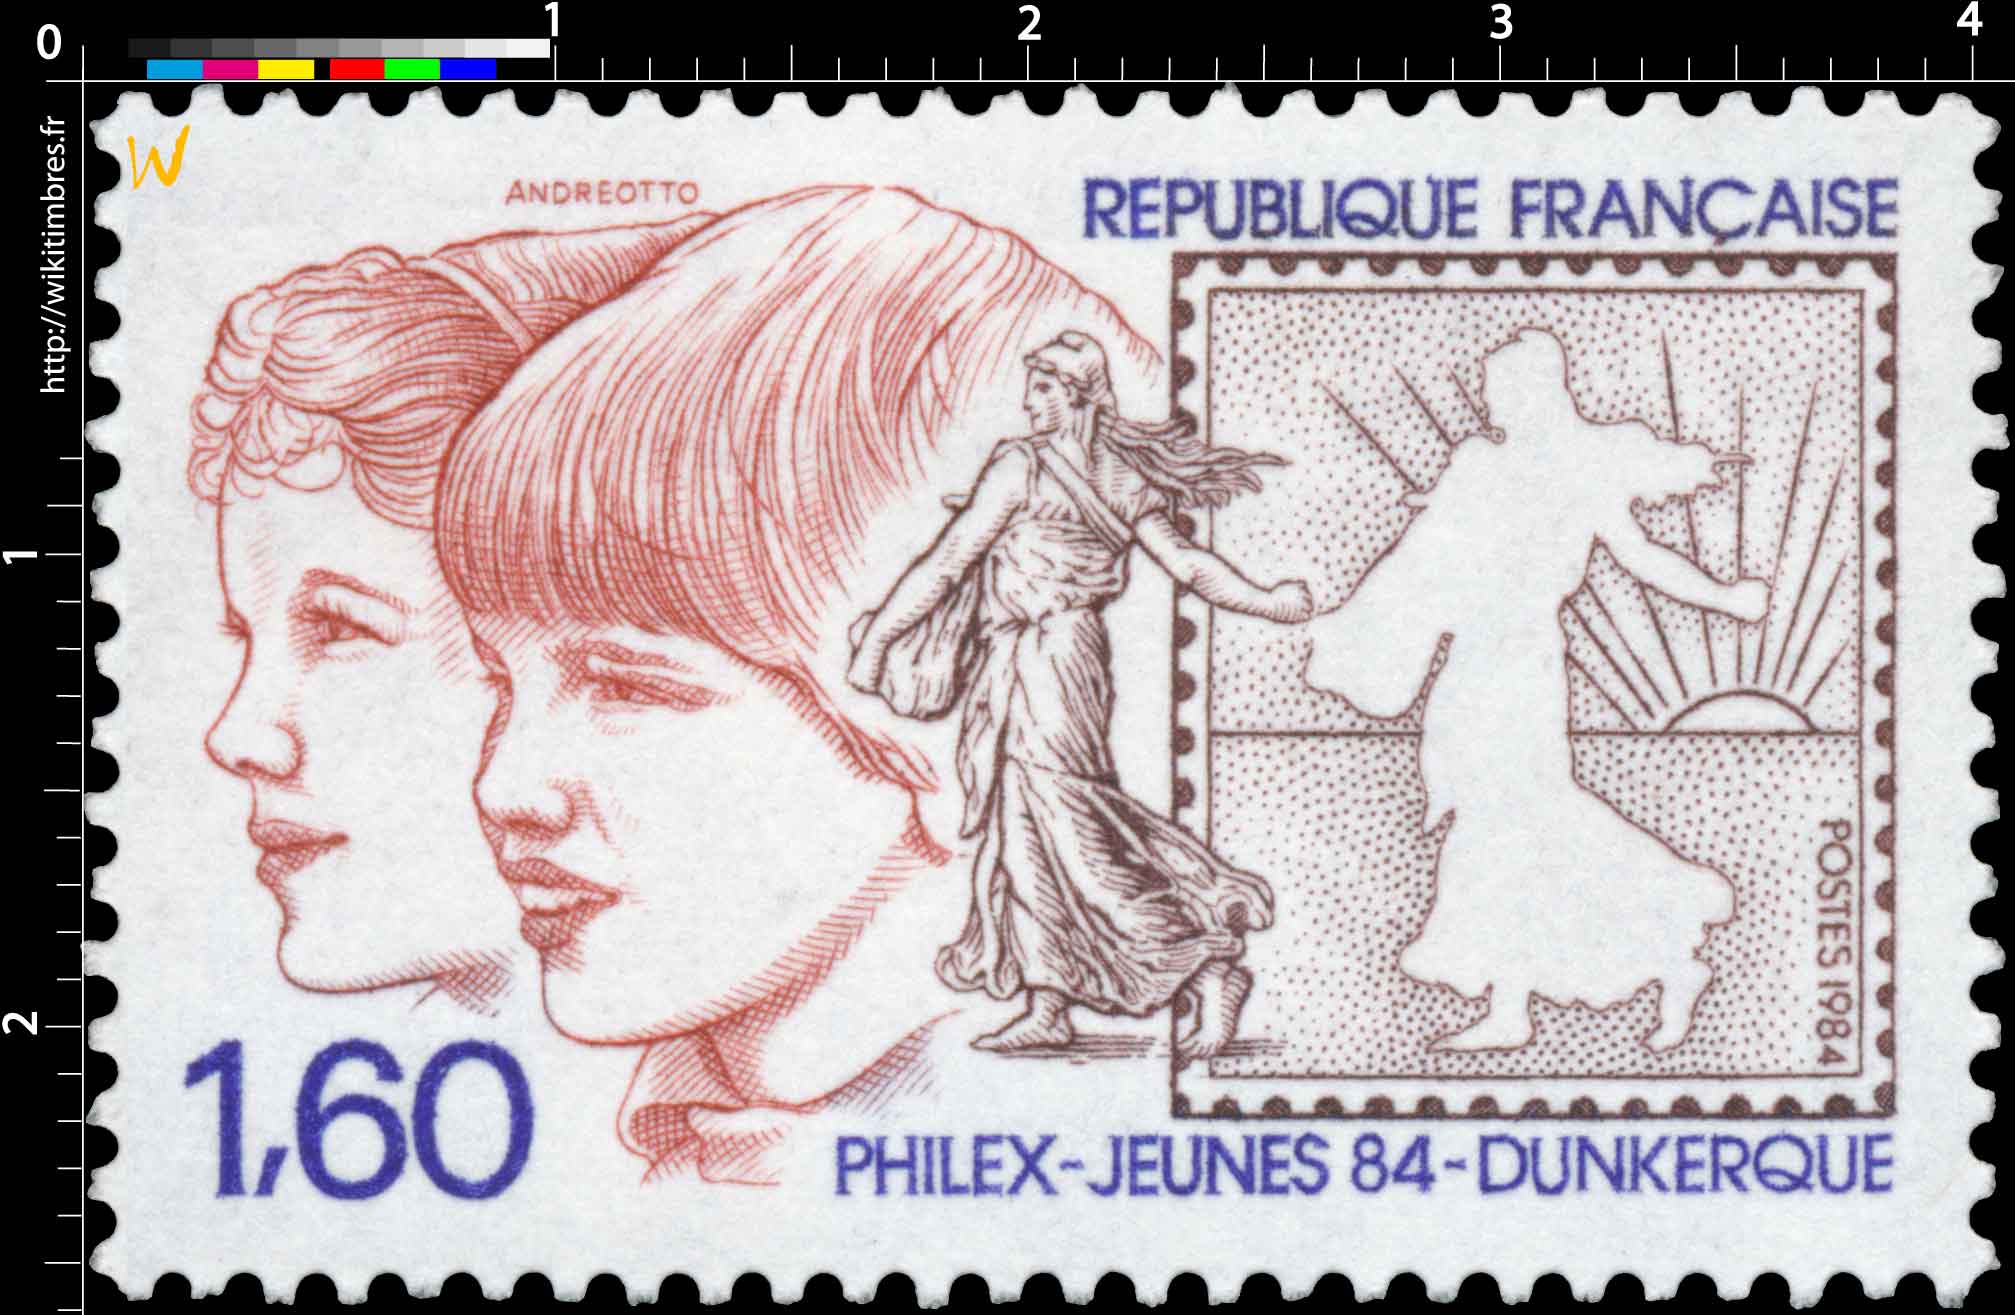 1984 PHILEX-JEUNES 84 - DUNKERQUE